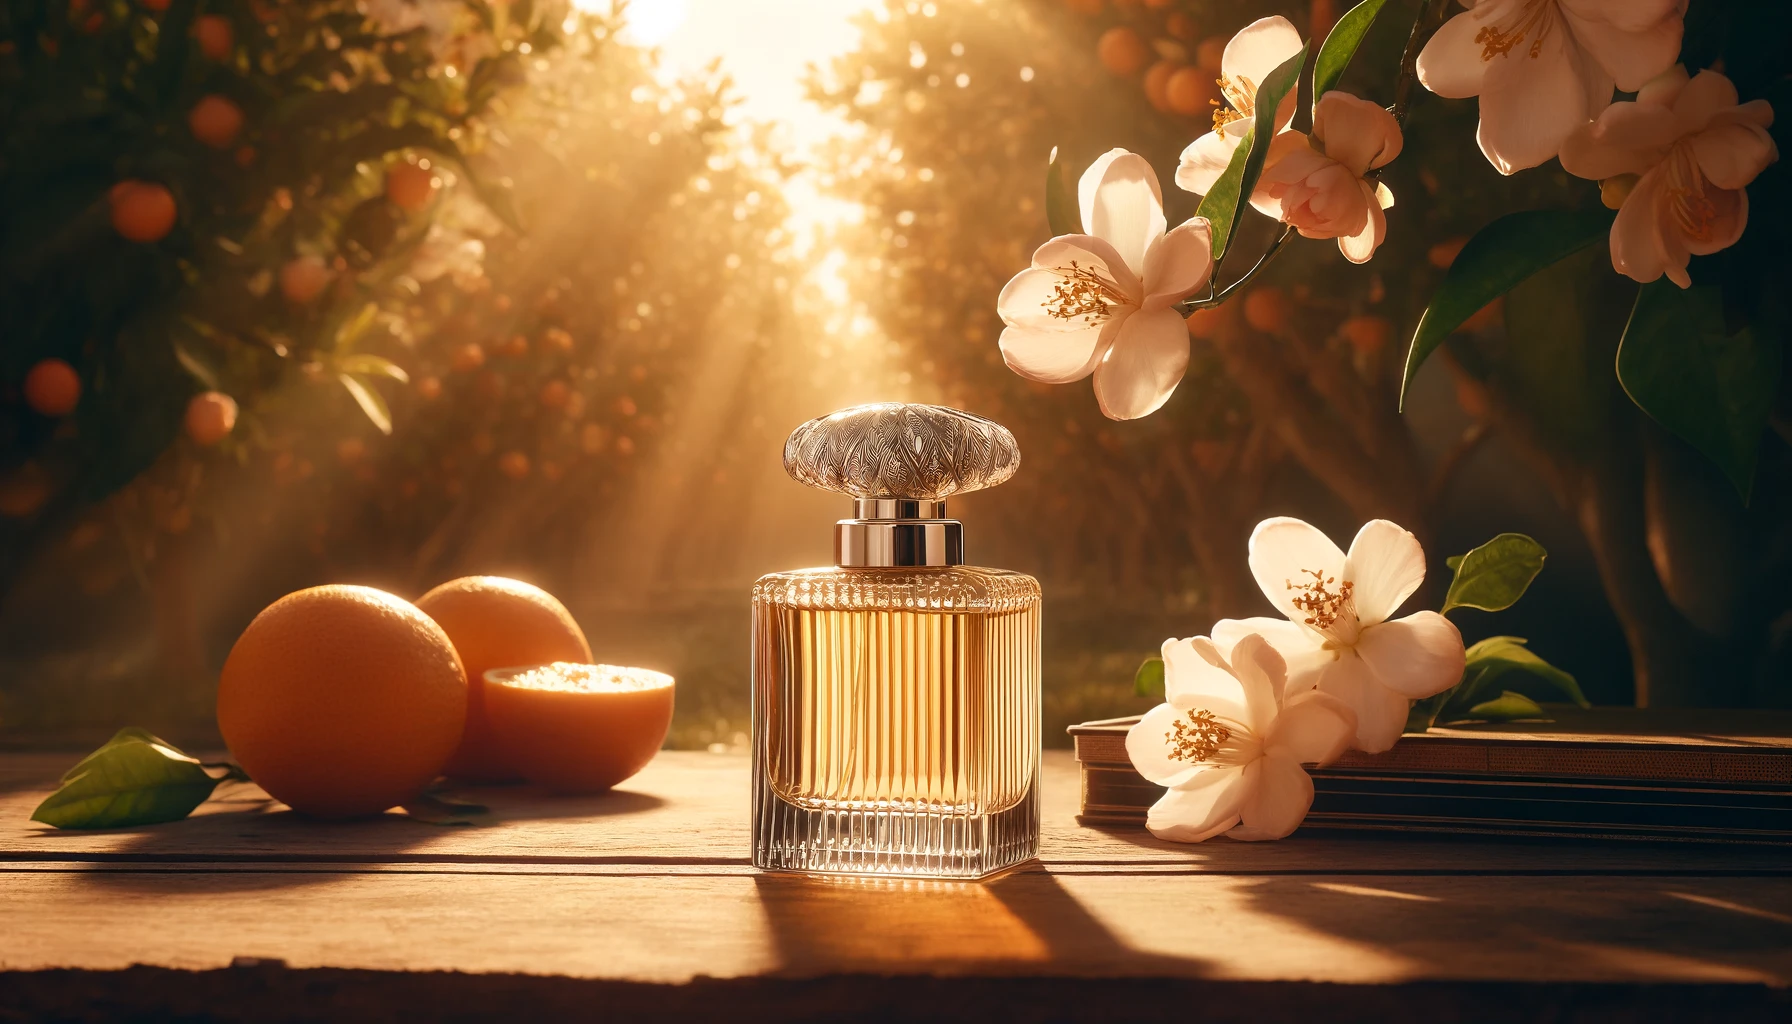 Orangeraie andalouse baignée de soleil avec des fleurs d'oranger en pleine floraison. Une bouteille élégante de parfum Benditaluz est posée sur une table en bois rustique au premier plan, capturant l'essence naturelle et artisanale du parfum. Image utilisée sur le site Manohi.com.